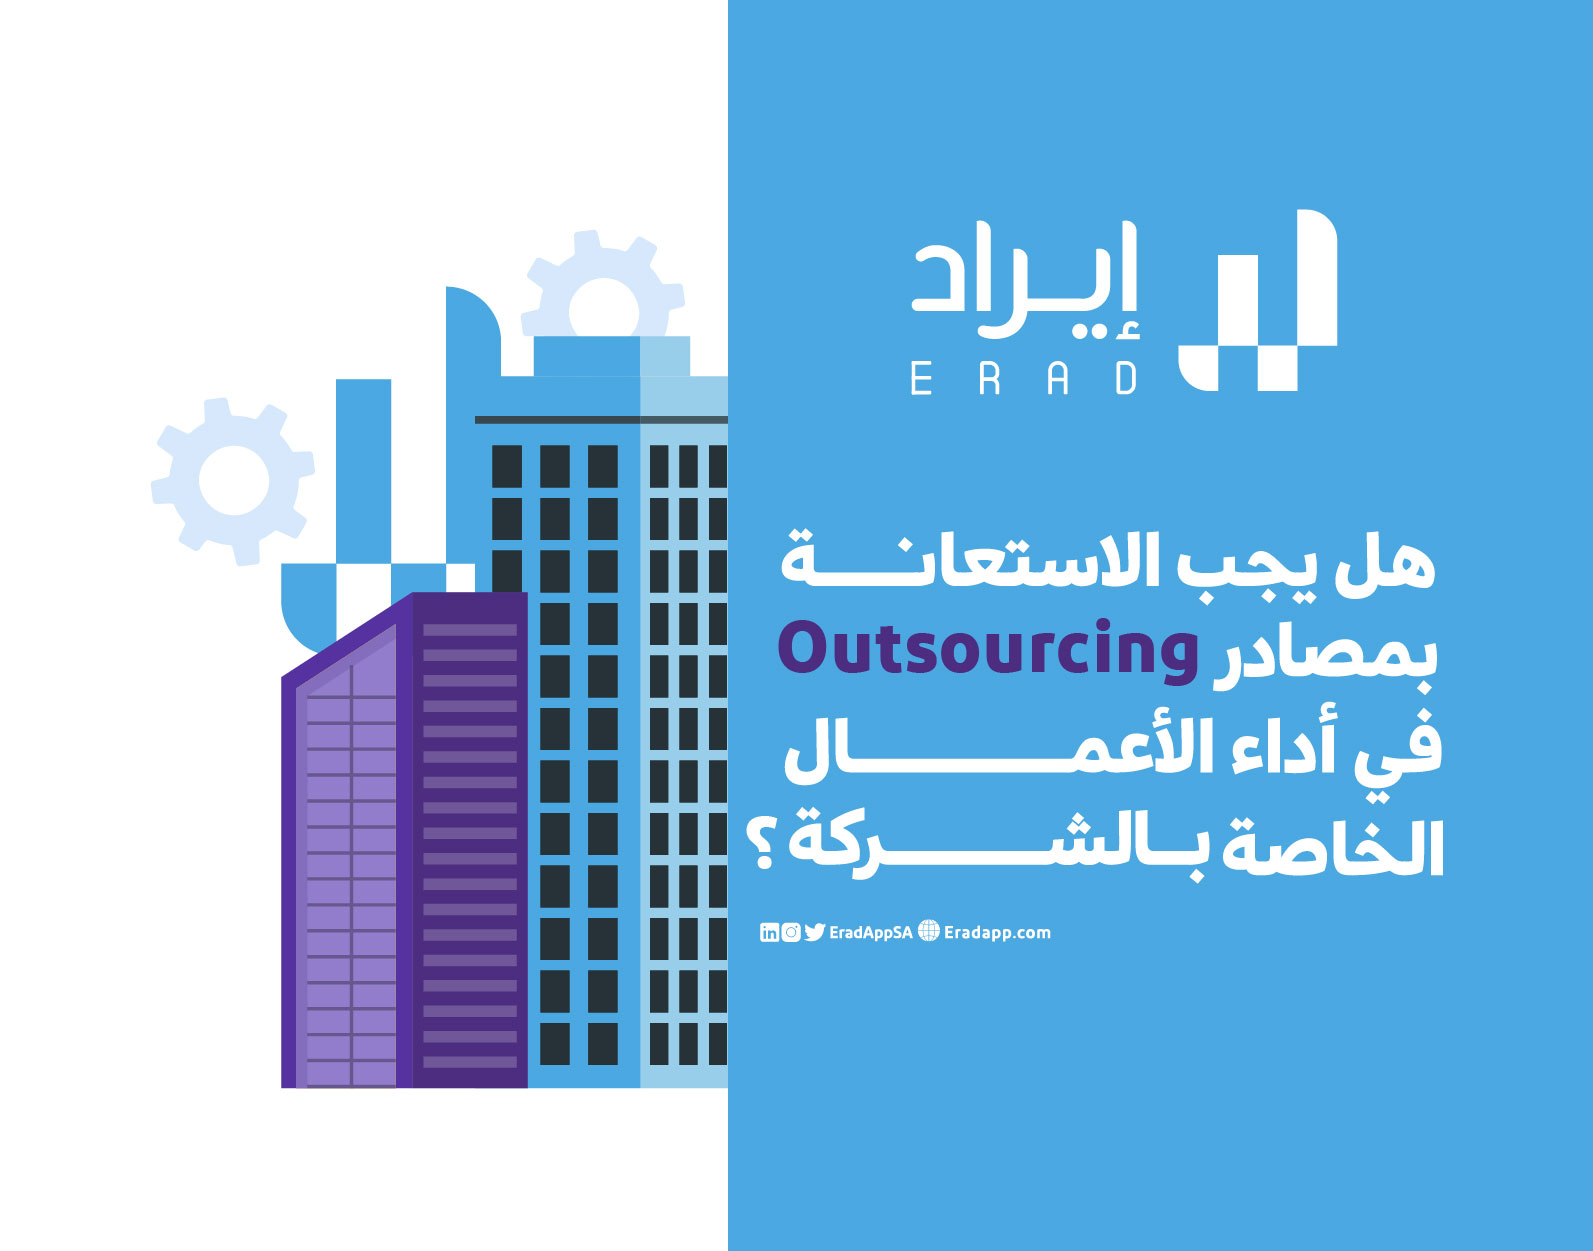 هل يجب الاستعانة بمصادر خارجية Outsourcing في أداء الأعمال الخاصة بالشركة؟